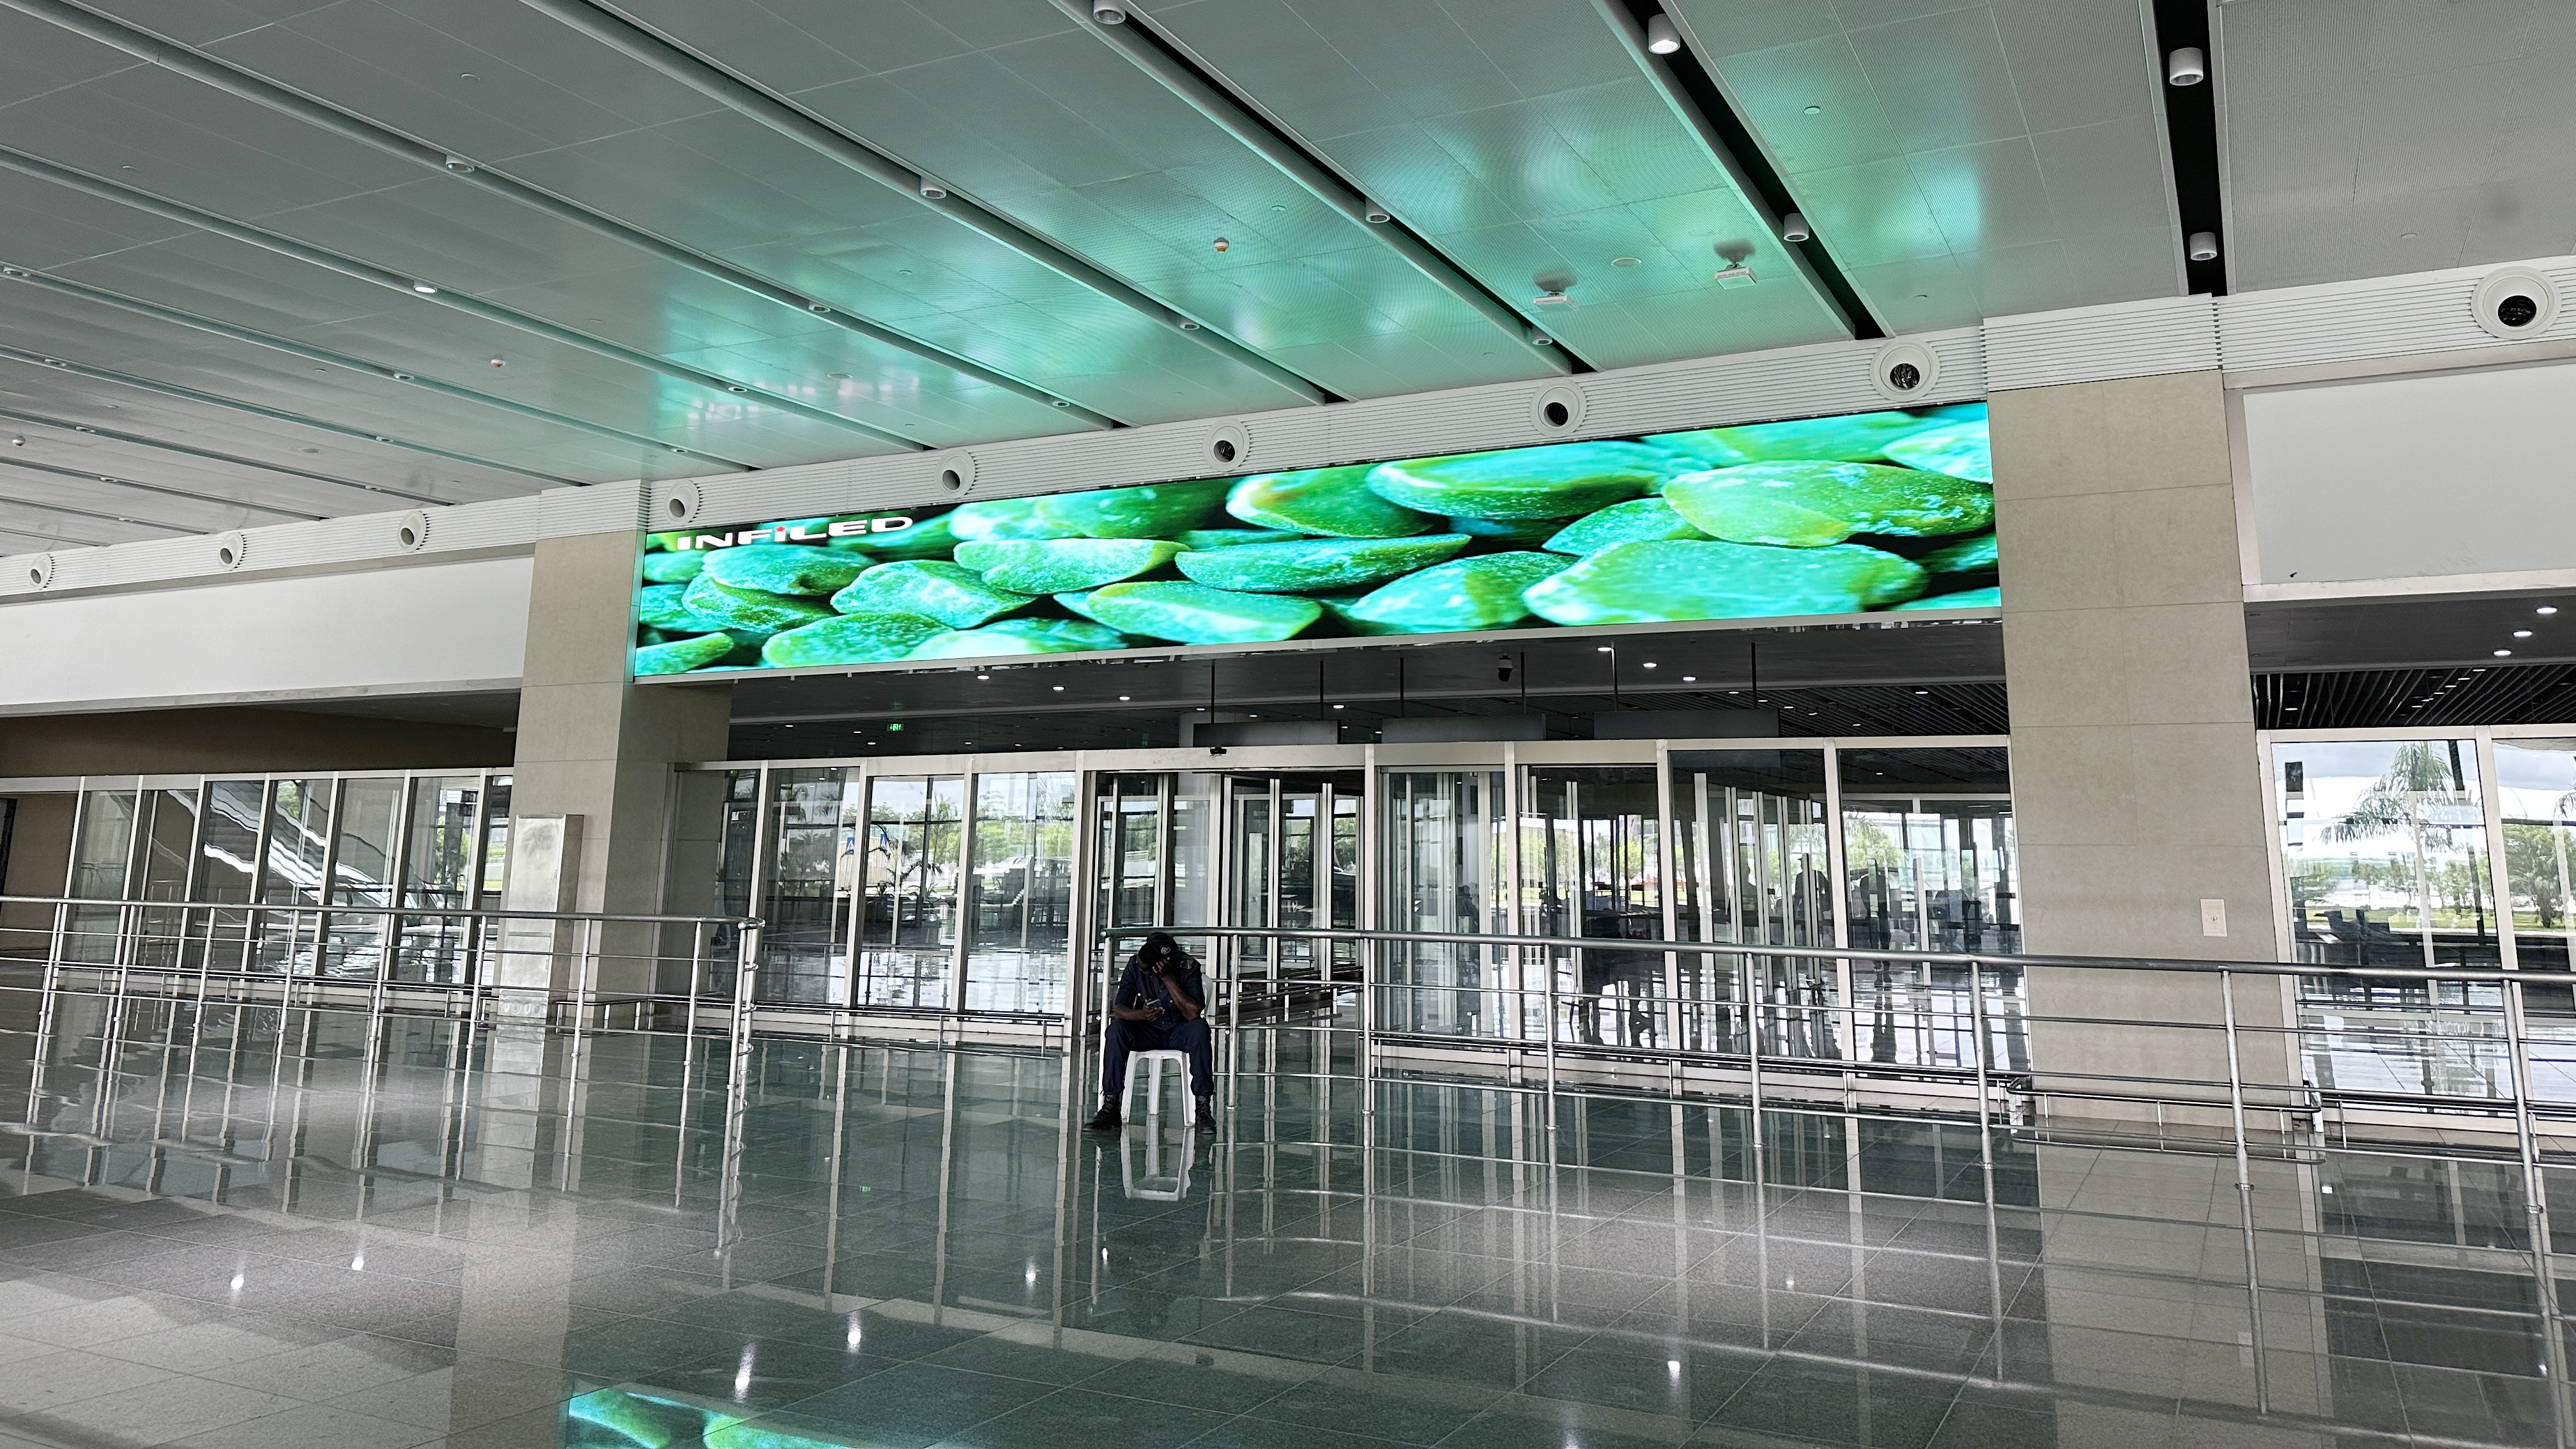 视爵光旭安哥拉内图博士国际机场LED显示屏项目国际抵达的LED显示屏